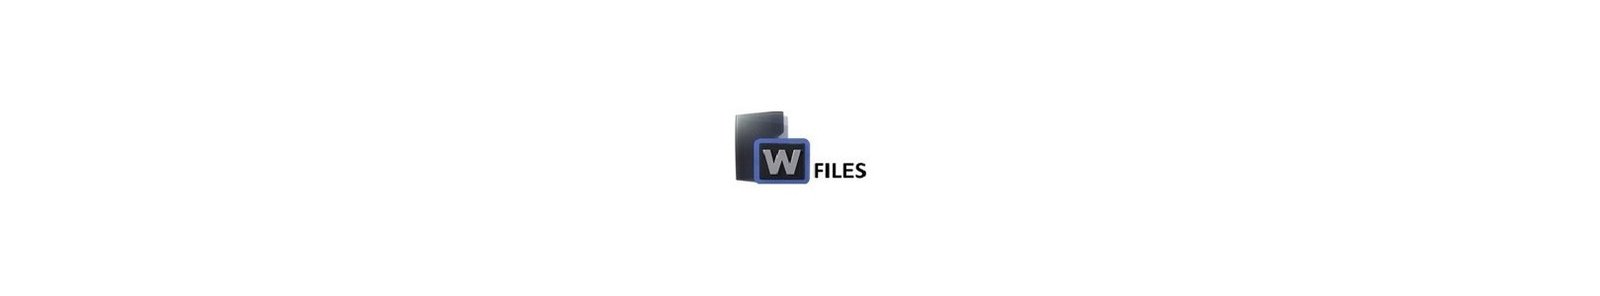 Wipfiles.net